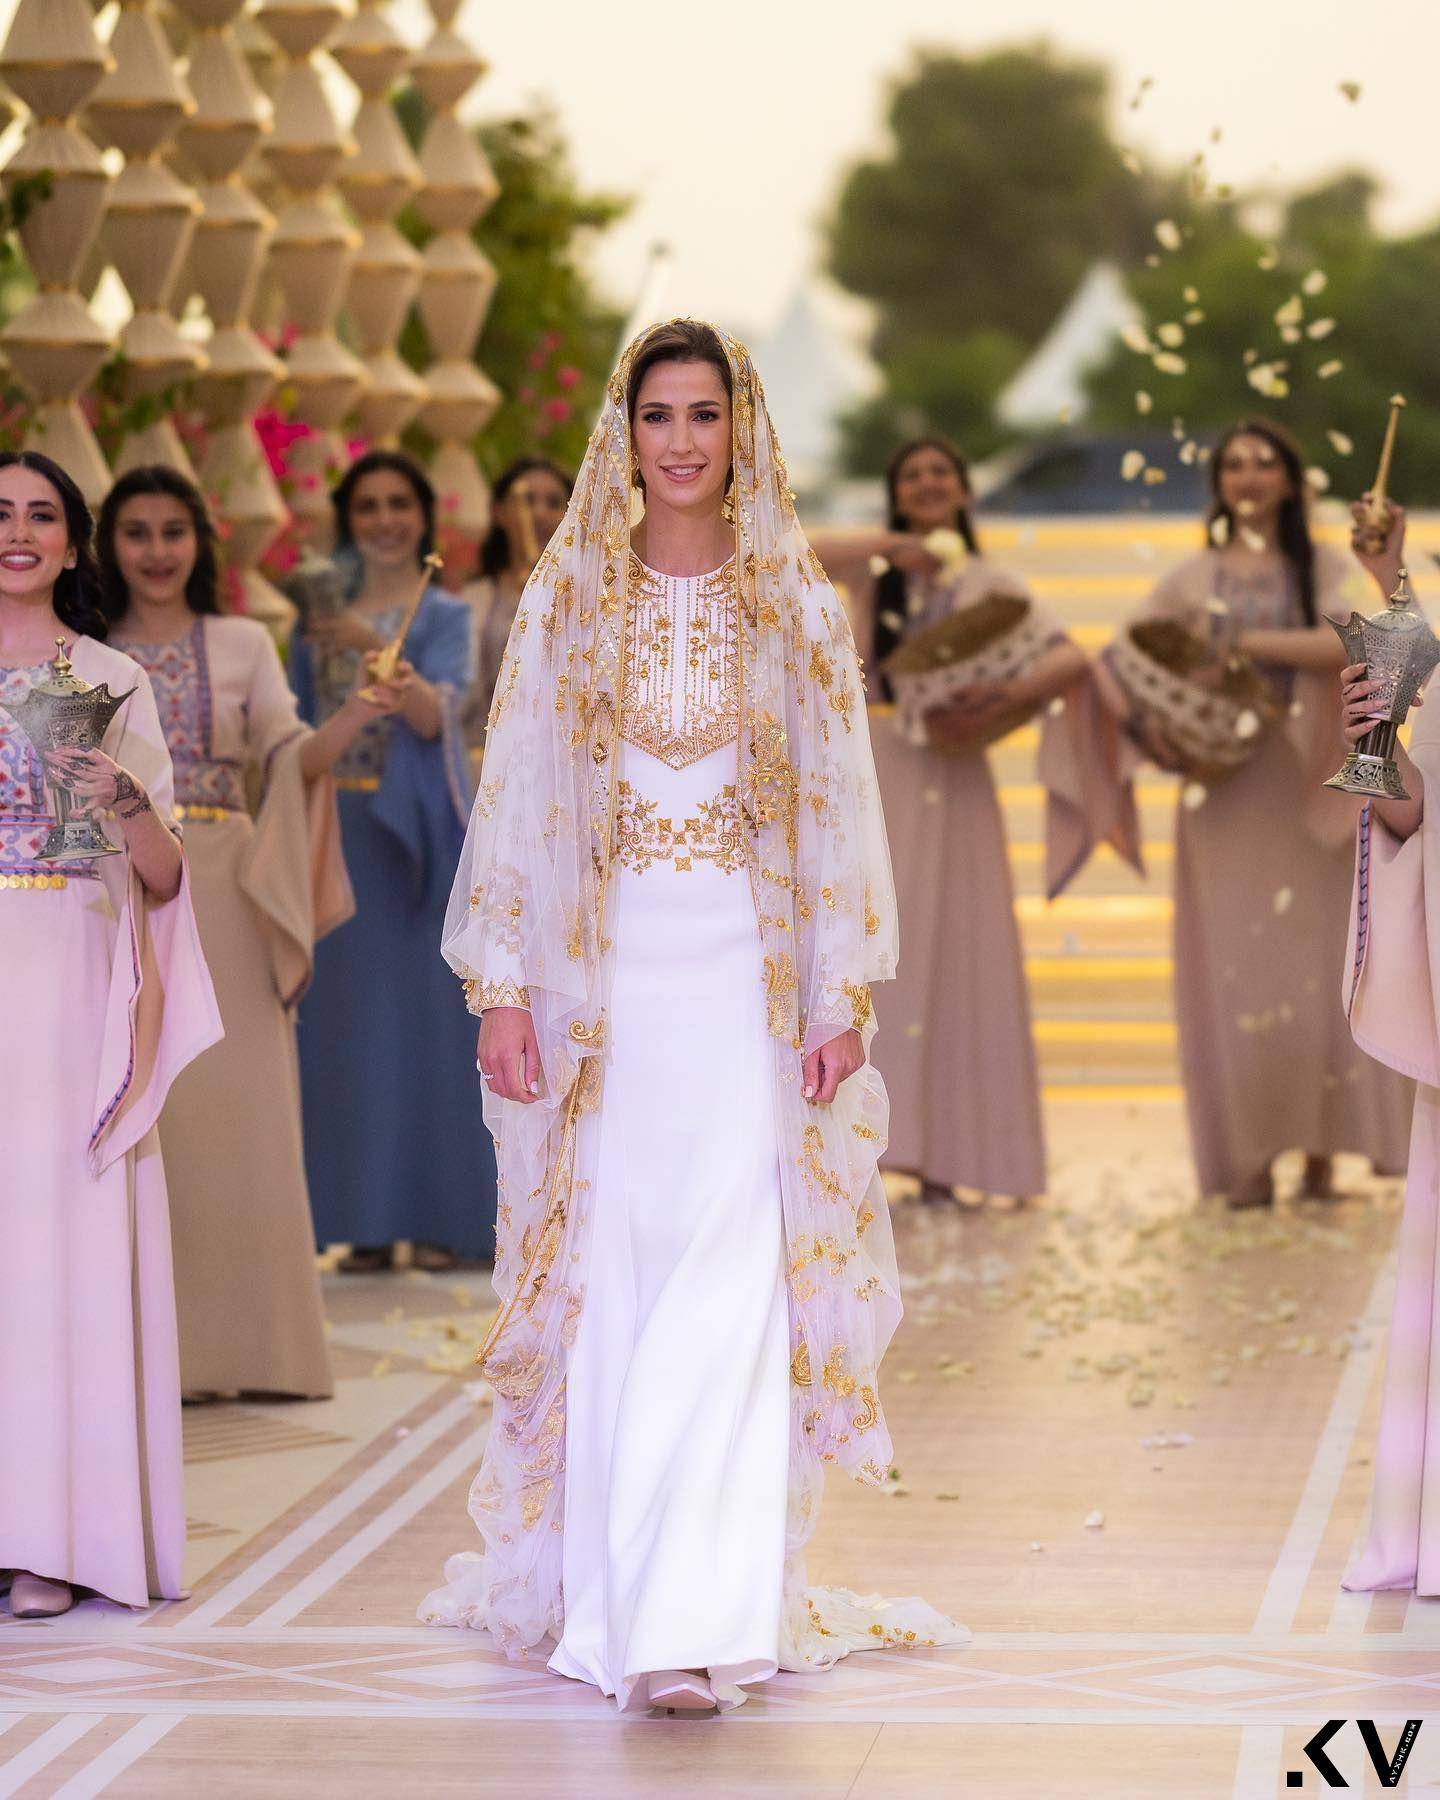 沙乌地阿拉伯千金将成约旦“最美王妃”　婚前派对礼服绣两国元素 名人名流 图3张